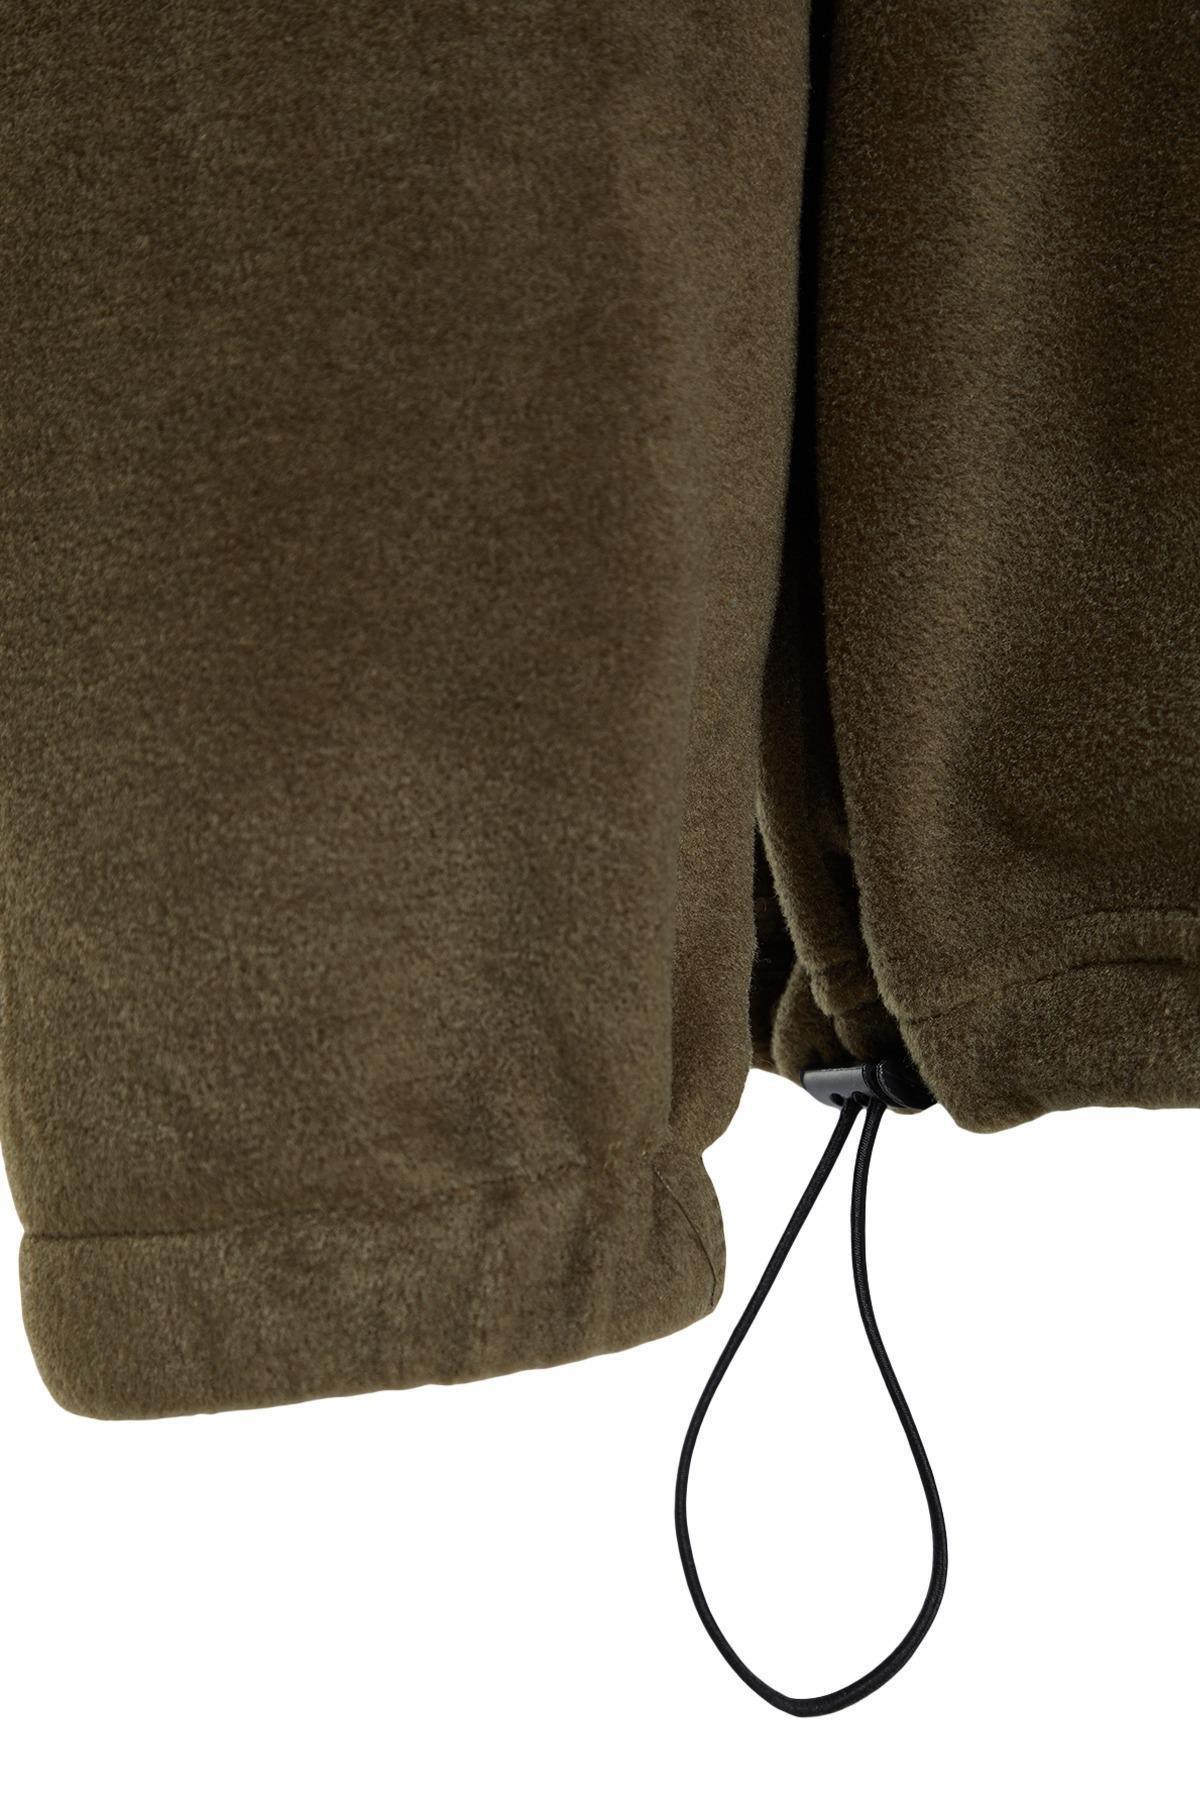 Trendyol - Brown Hooded Printed Sweatshirt